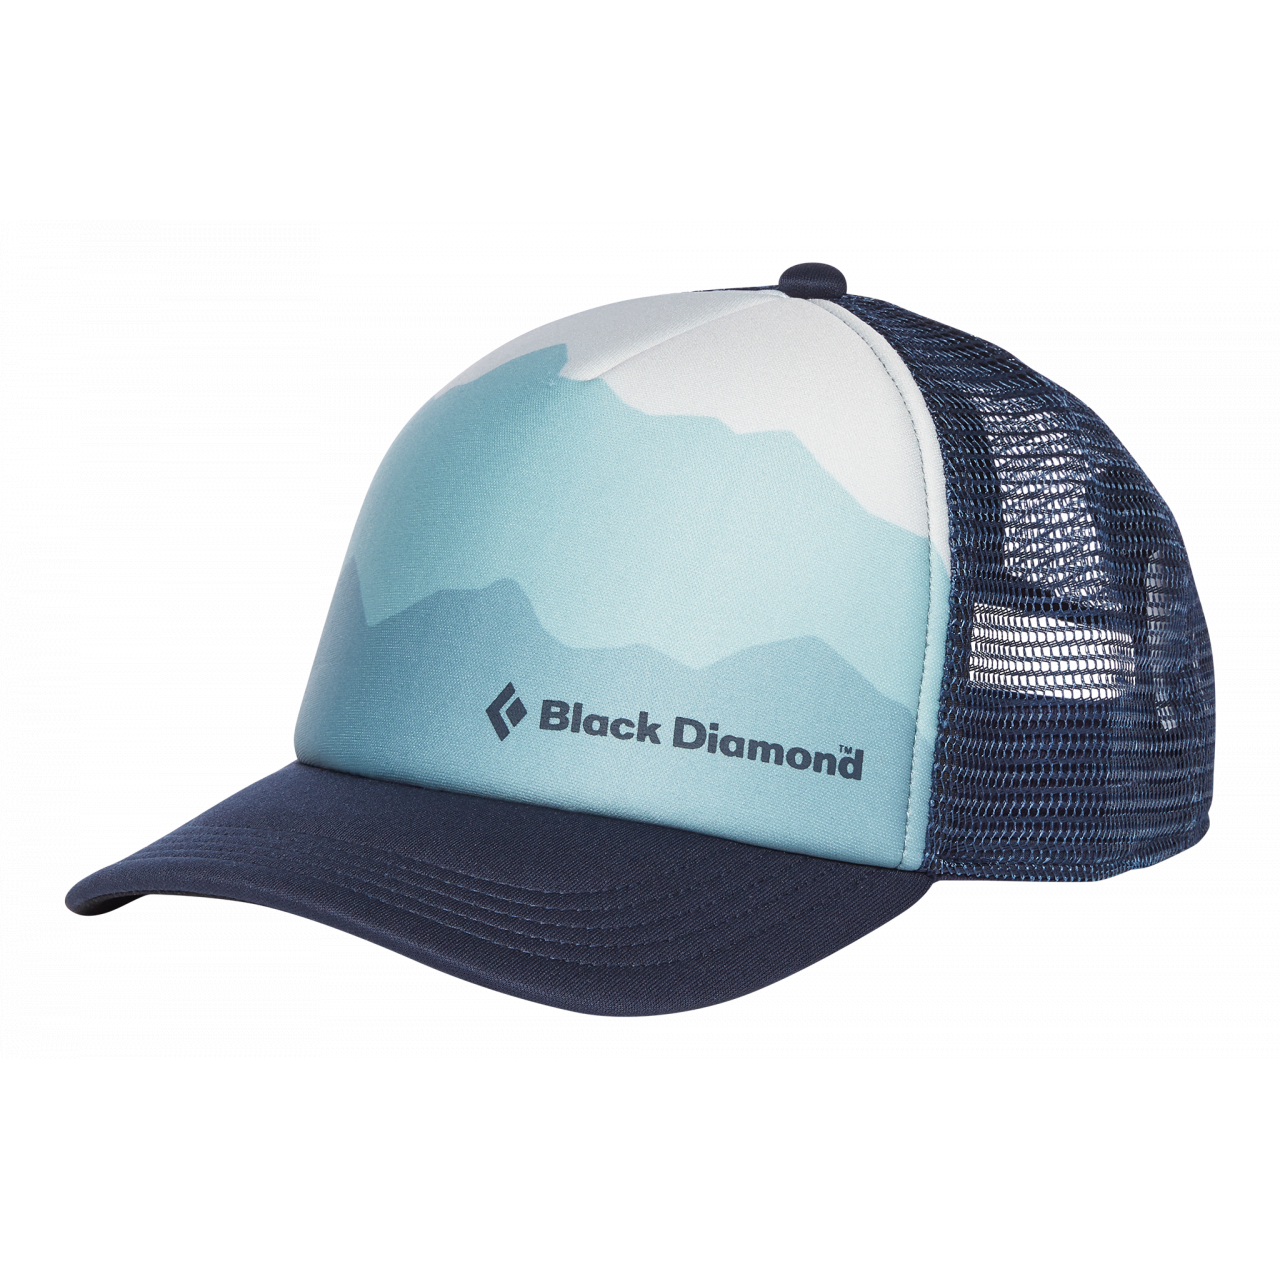 Black Diamond Women's Trucker Hat